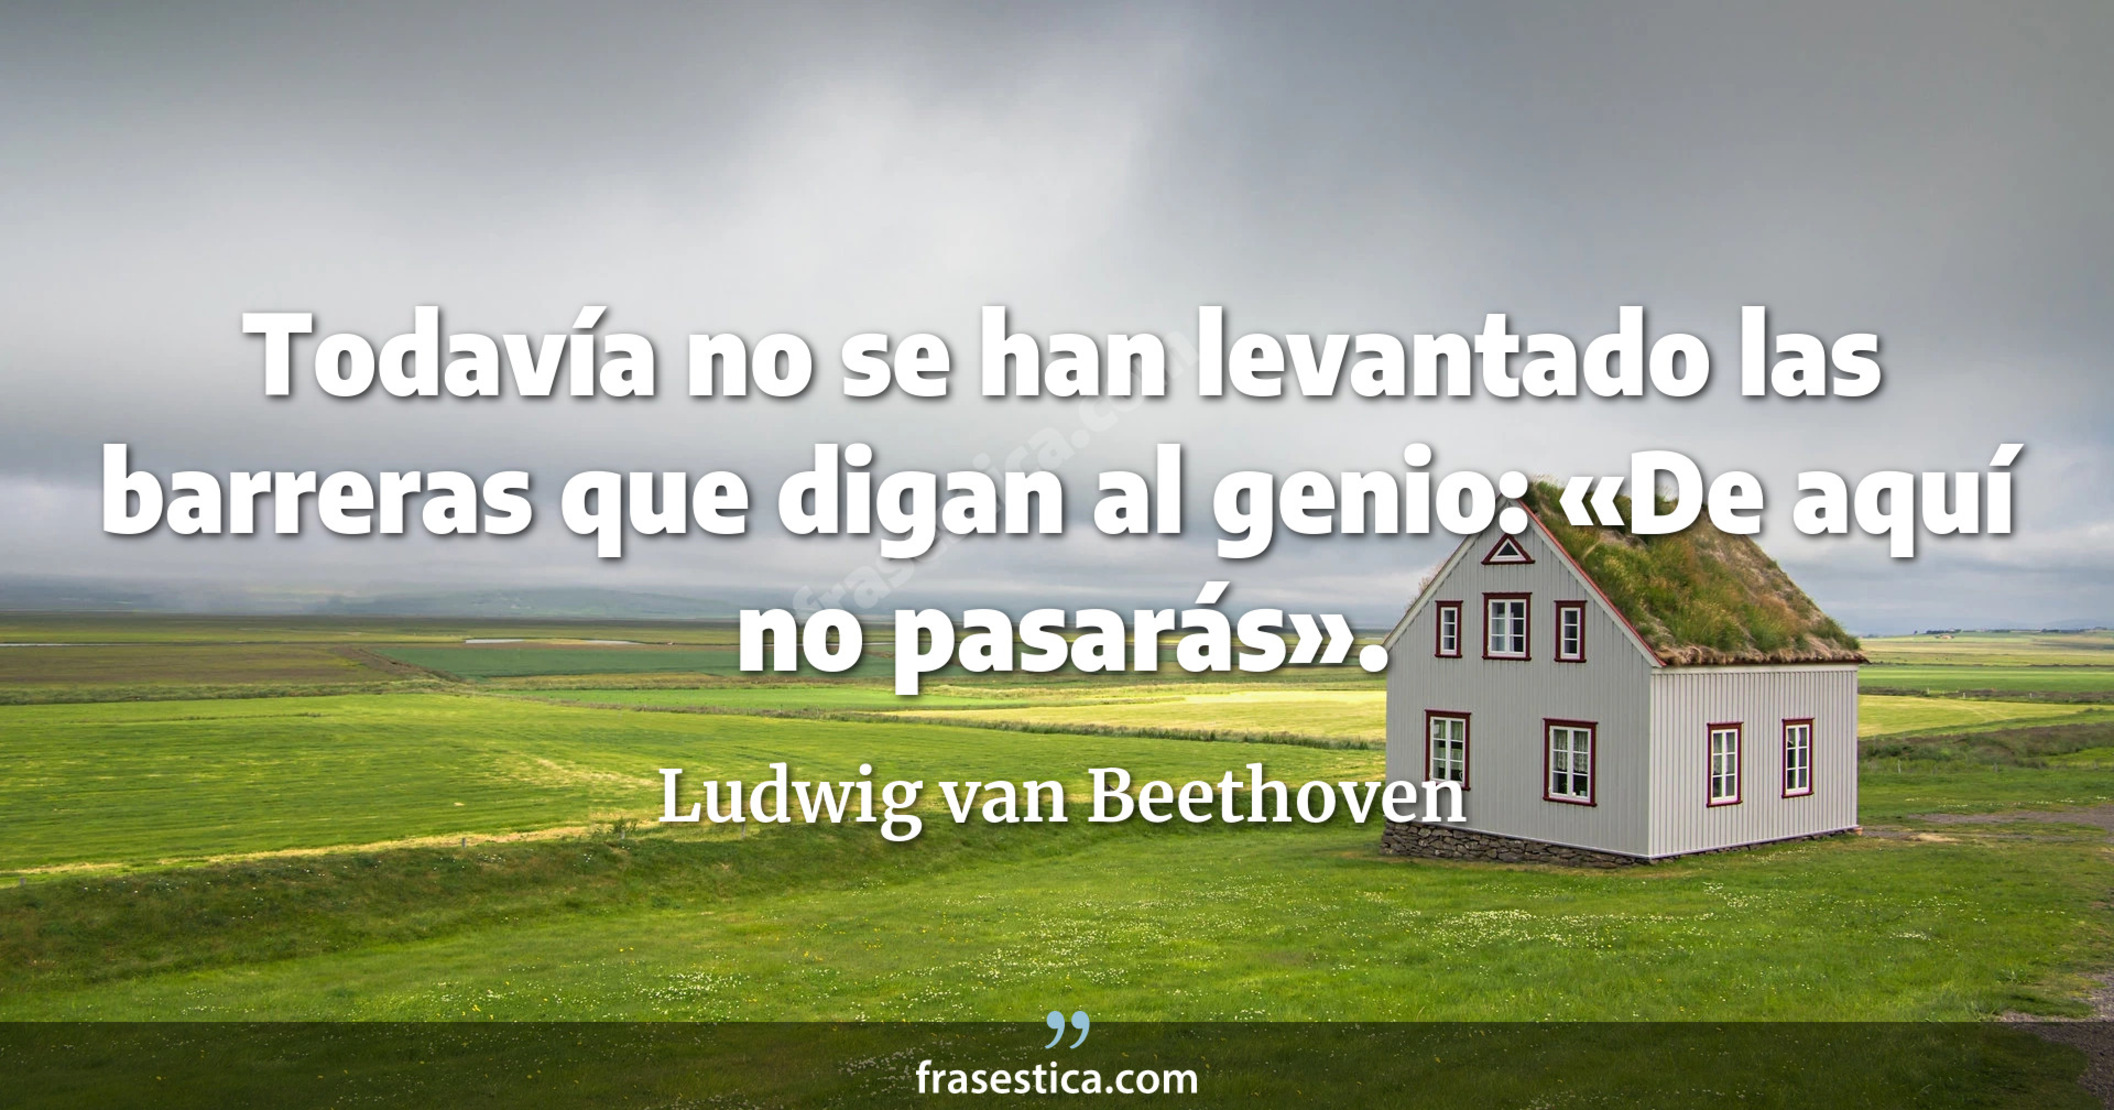 Todavía no se han levantado las barreras que digan al genio: «De aquí no pasarás». - Ludwig van Beethoven